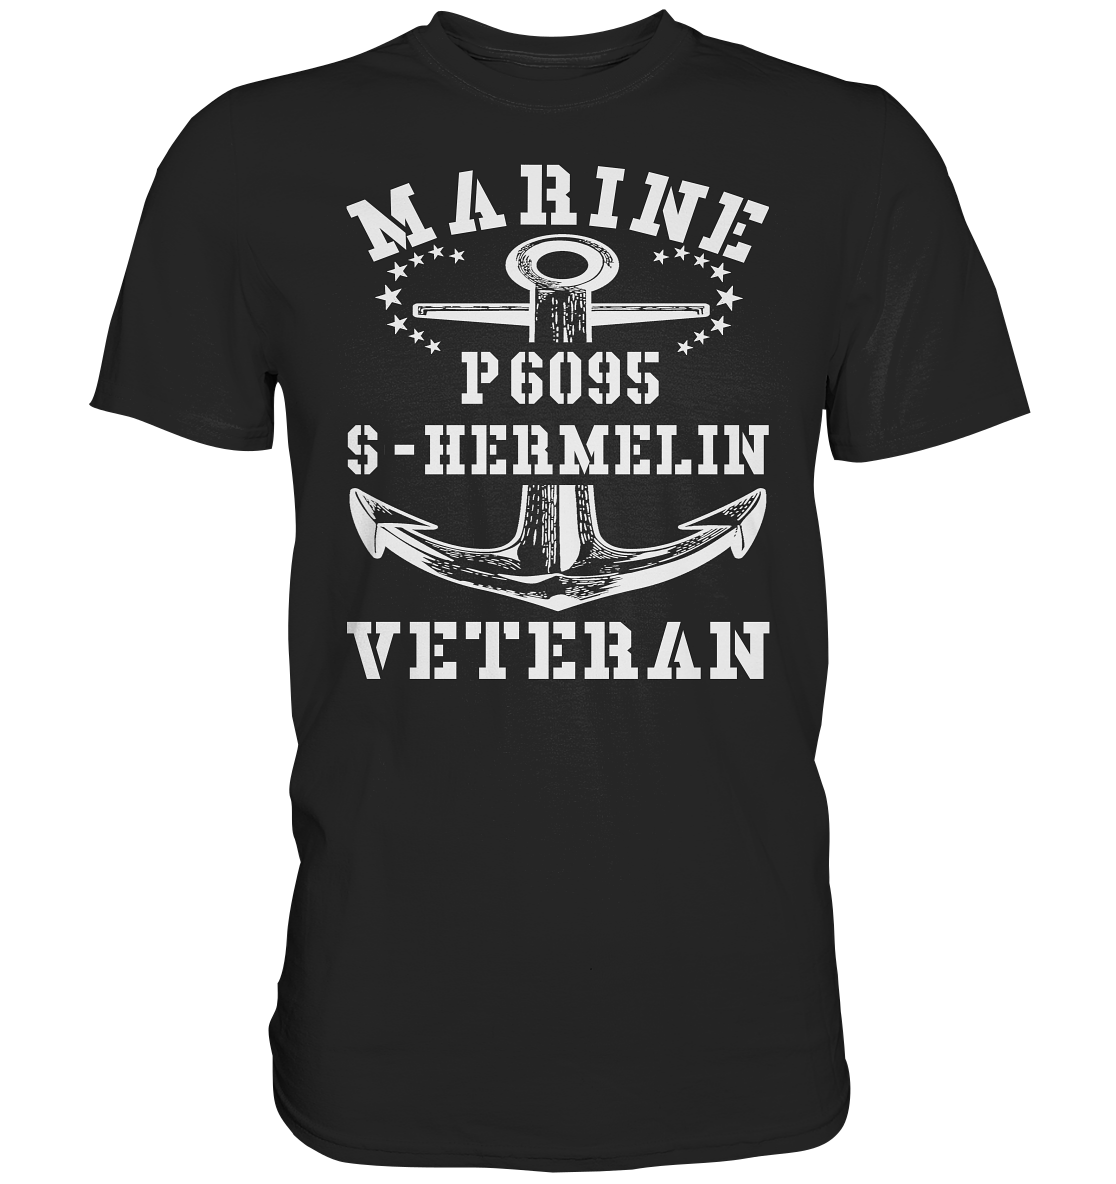 P6095 S-HERMELIN Marine Veteran - Premium Shirt